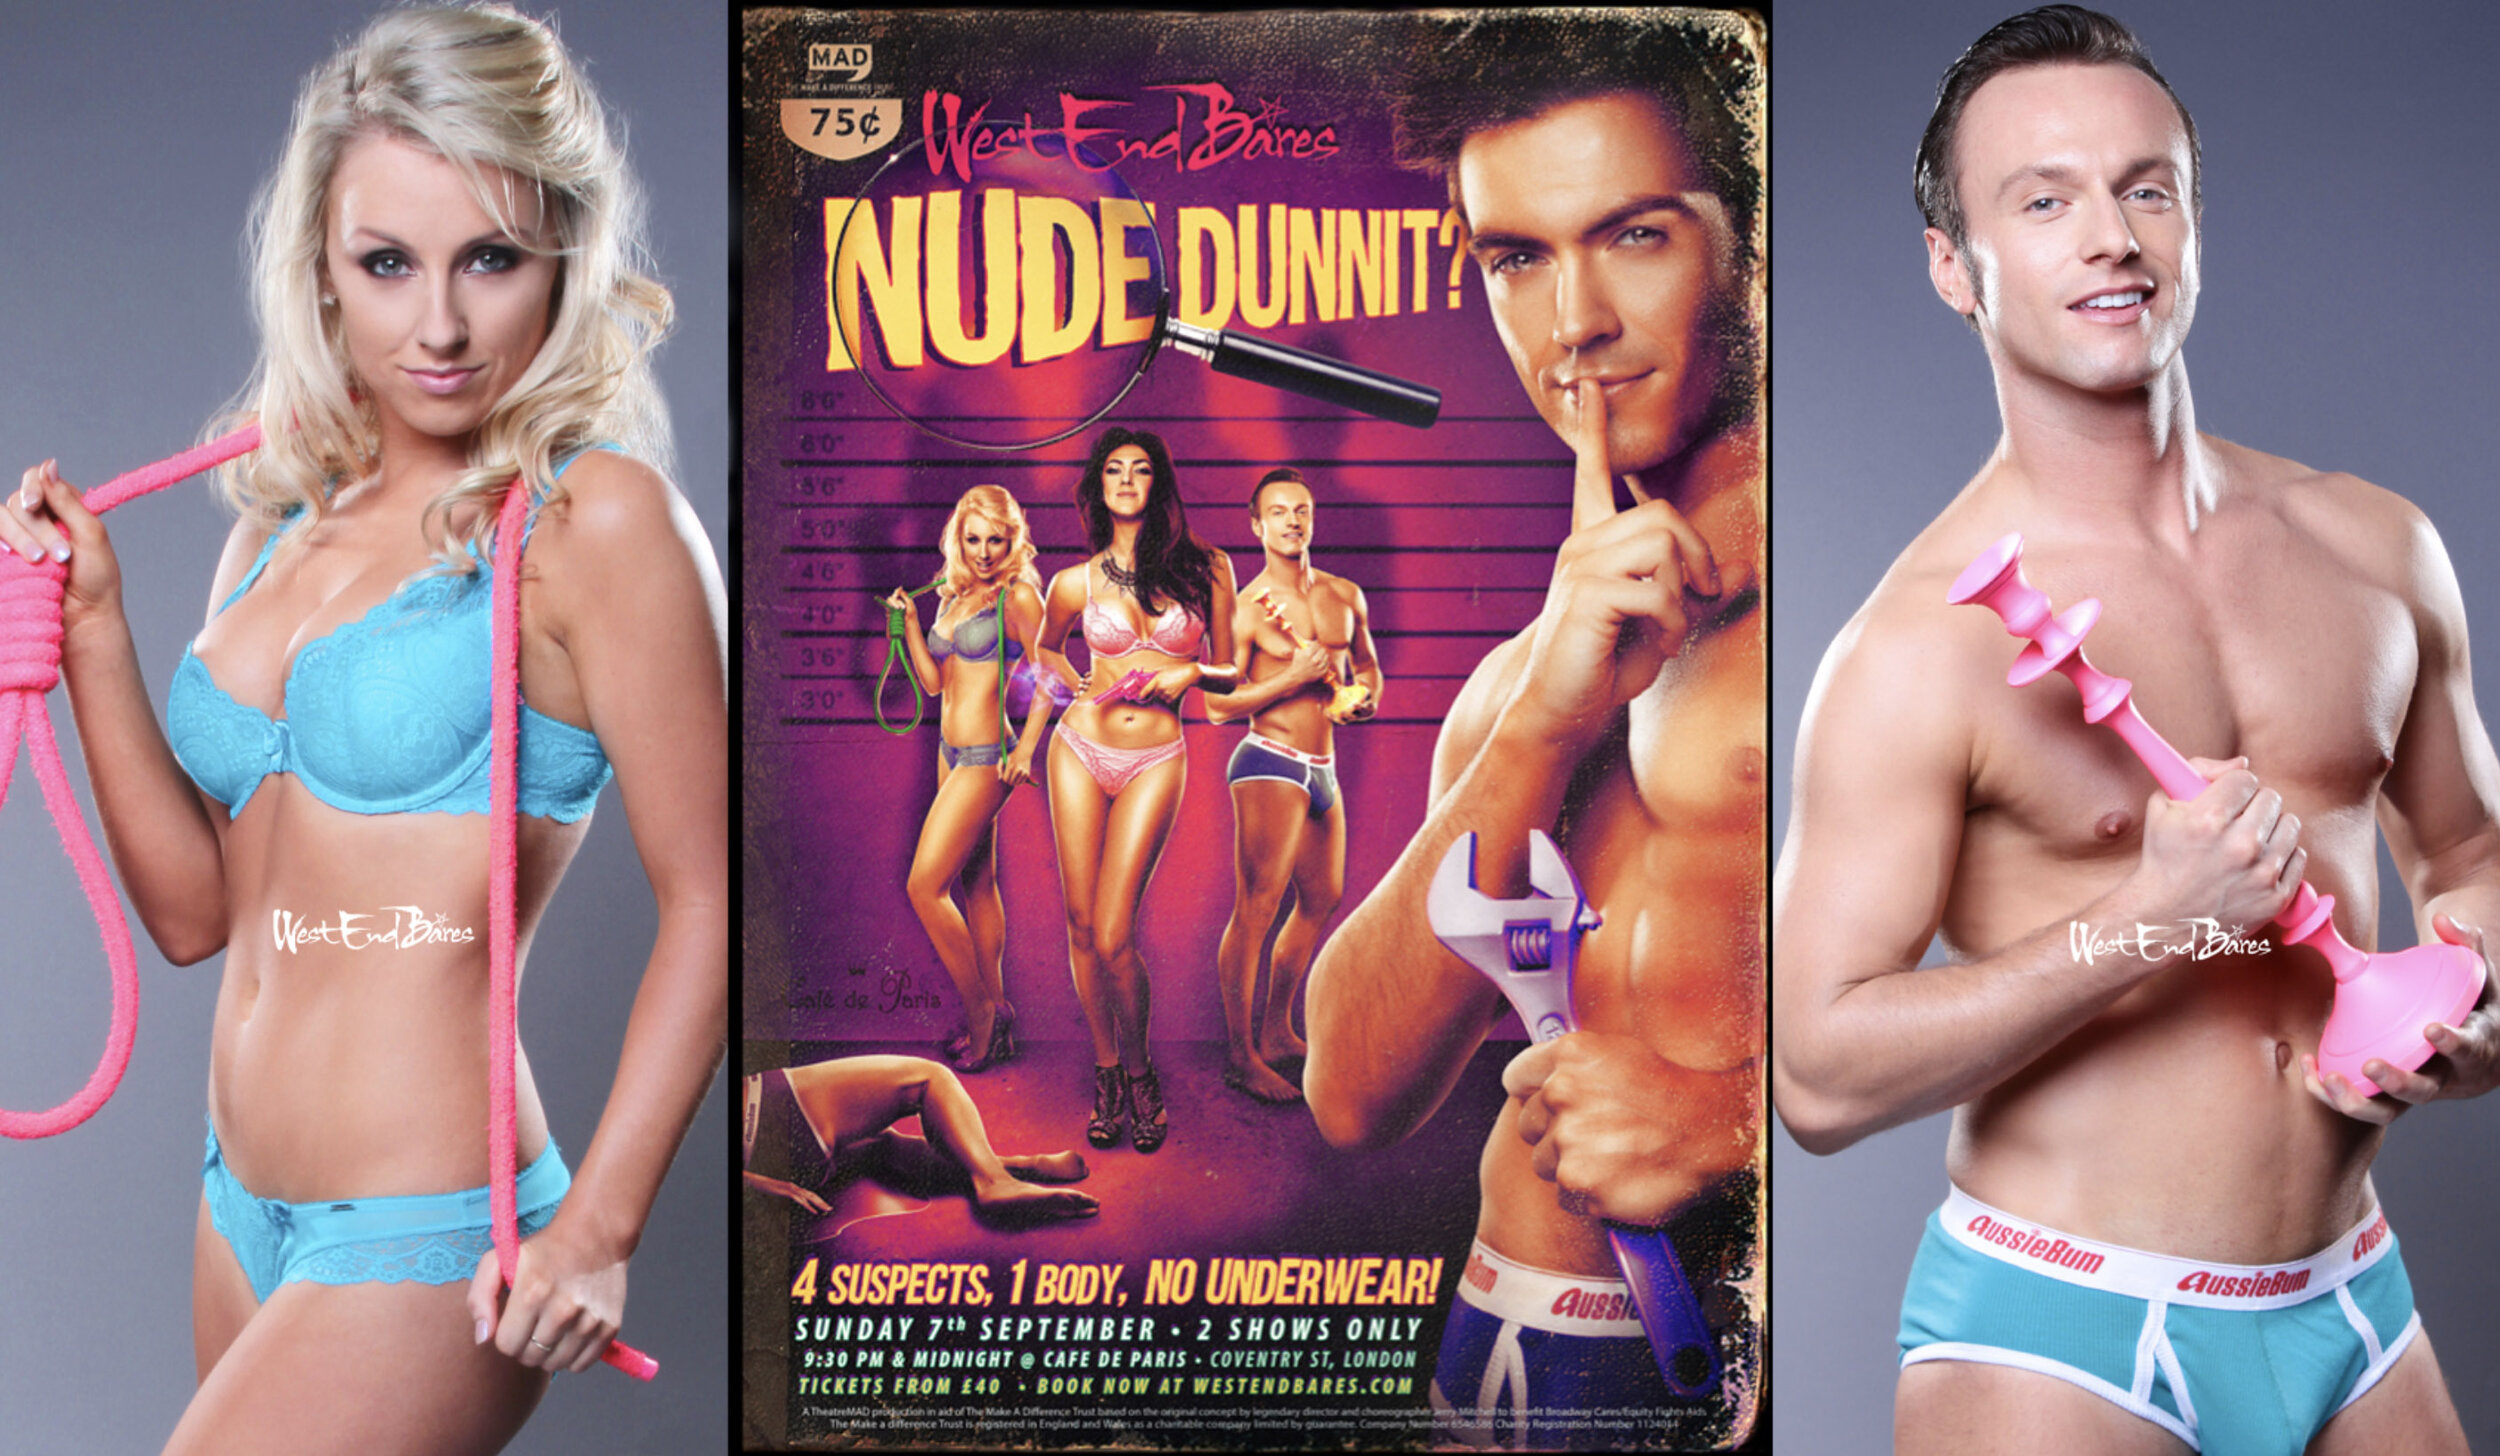 West End Bares show promo - Nude Dunnit?. shot at the Cafe de Paris